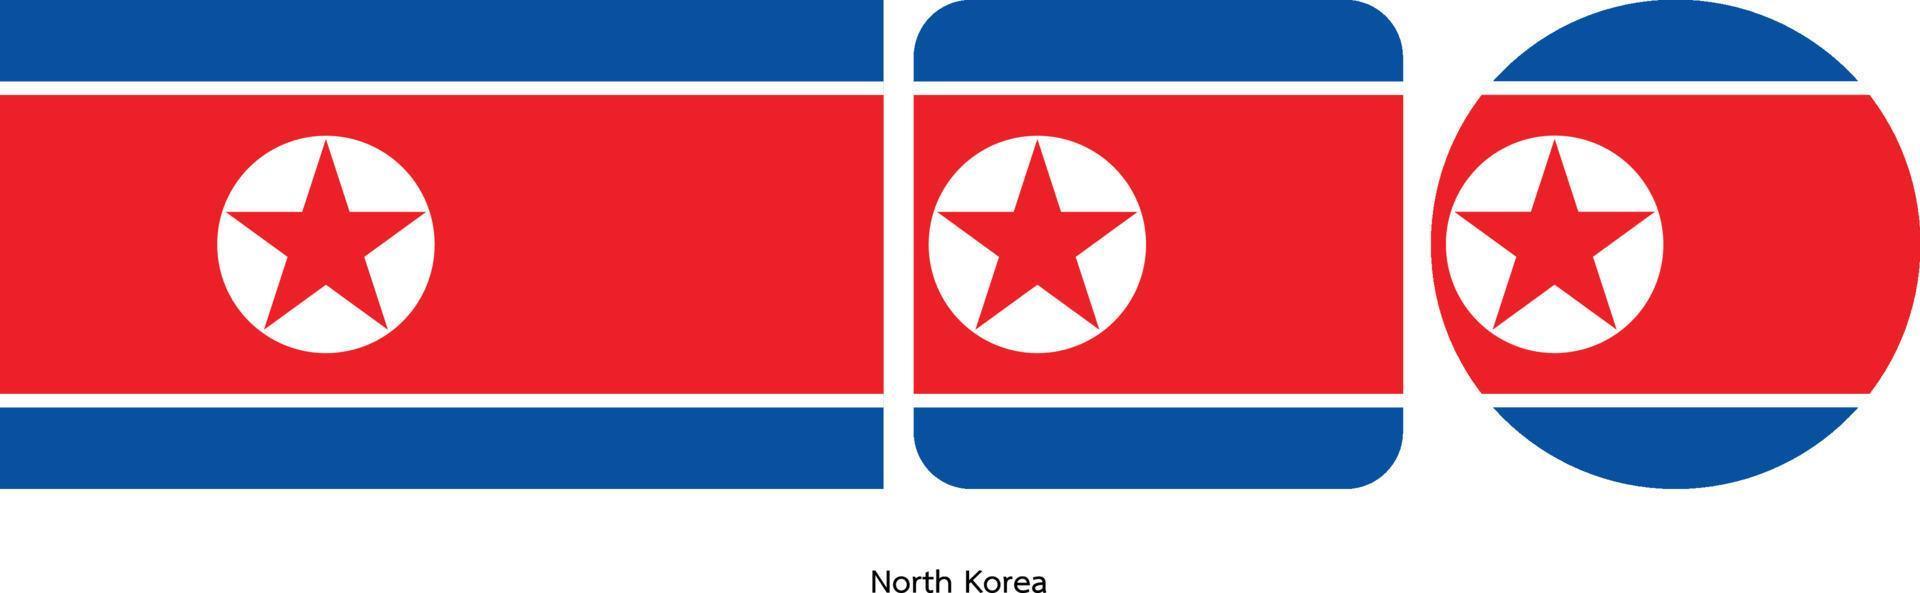 bandeira da coreia do norte, ilustração vetorial vetor